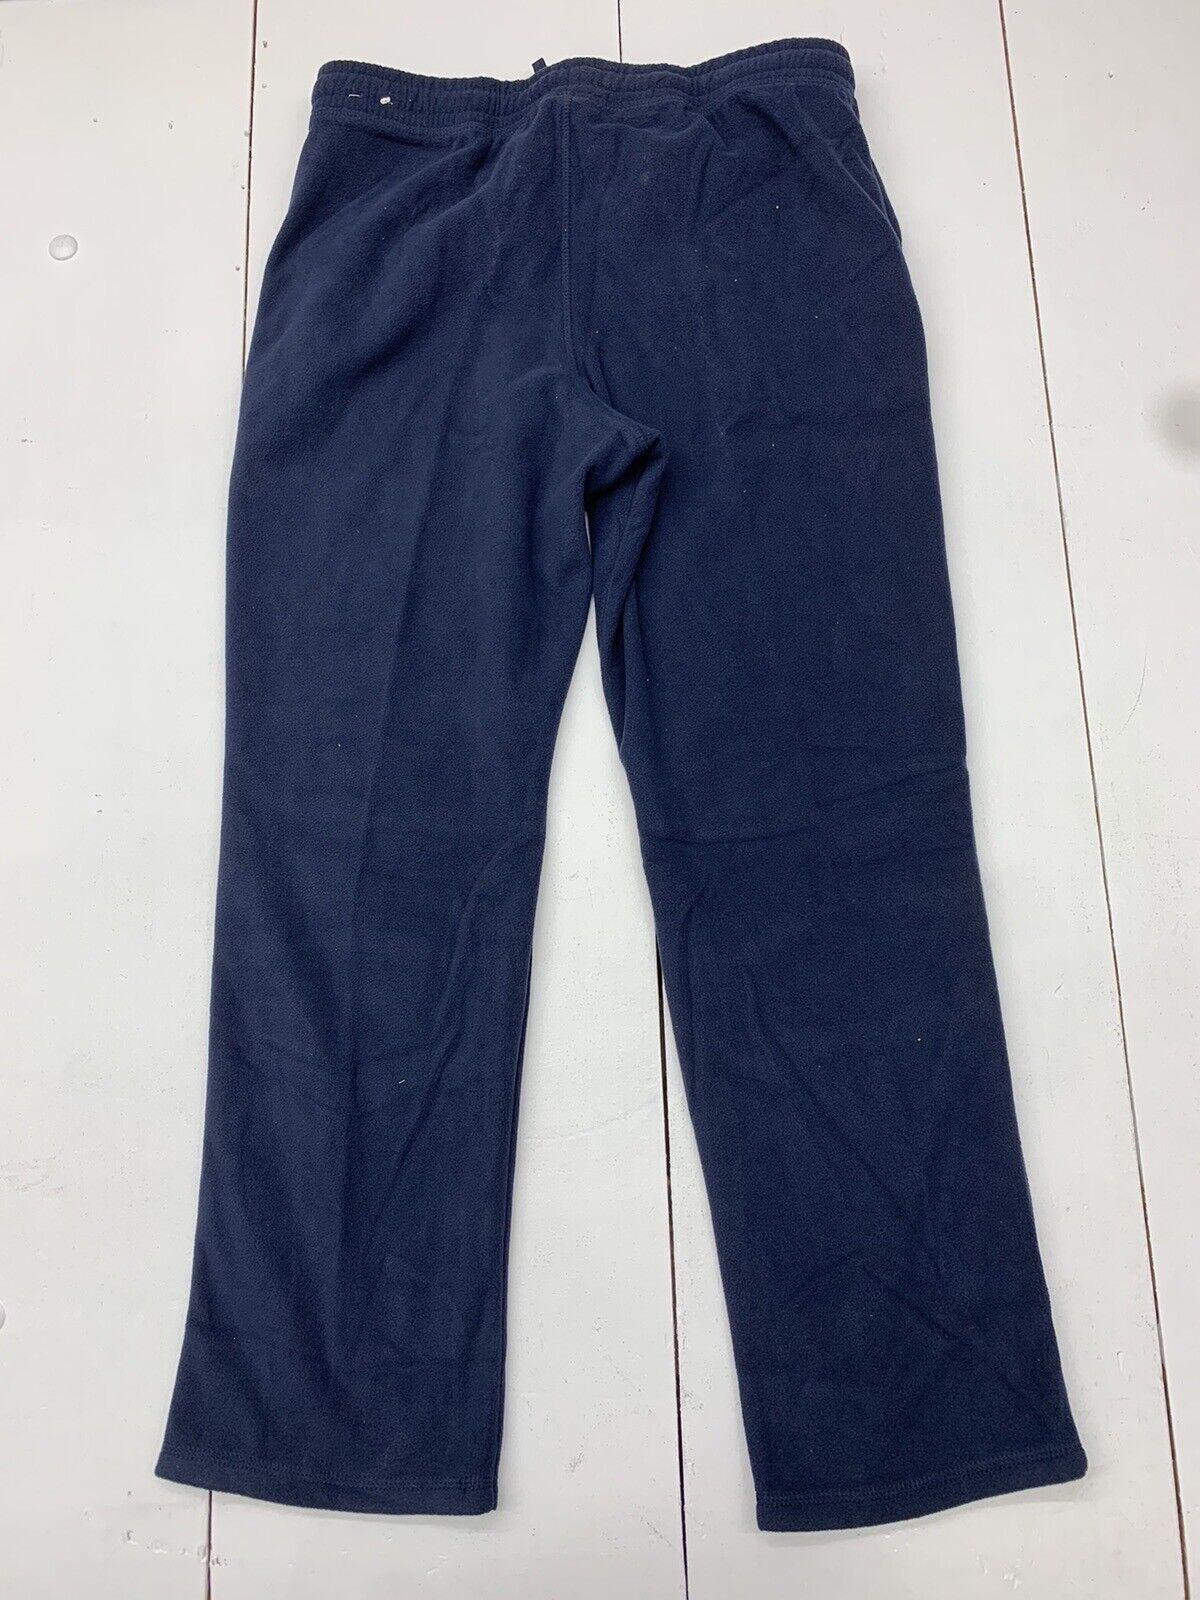 Xersion Boys Navy Blue Sweatpants Size XL Husky - beyond exchange